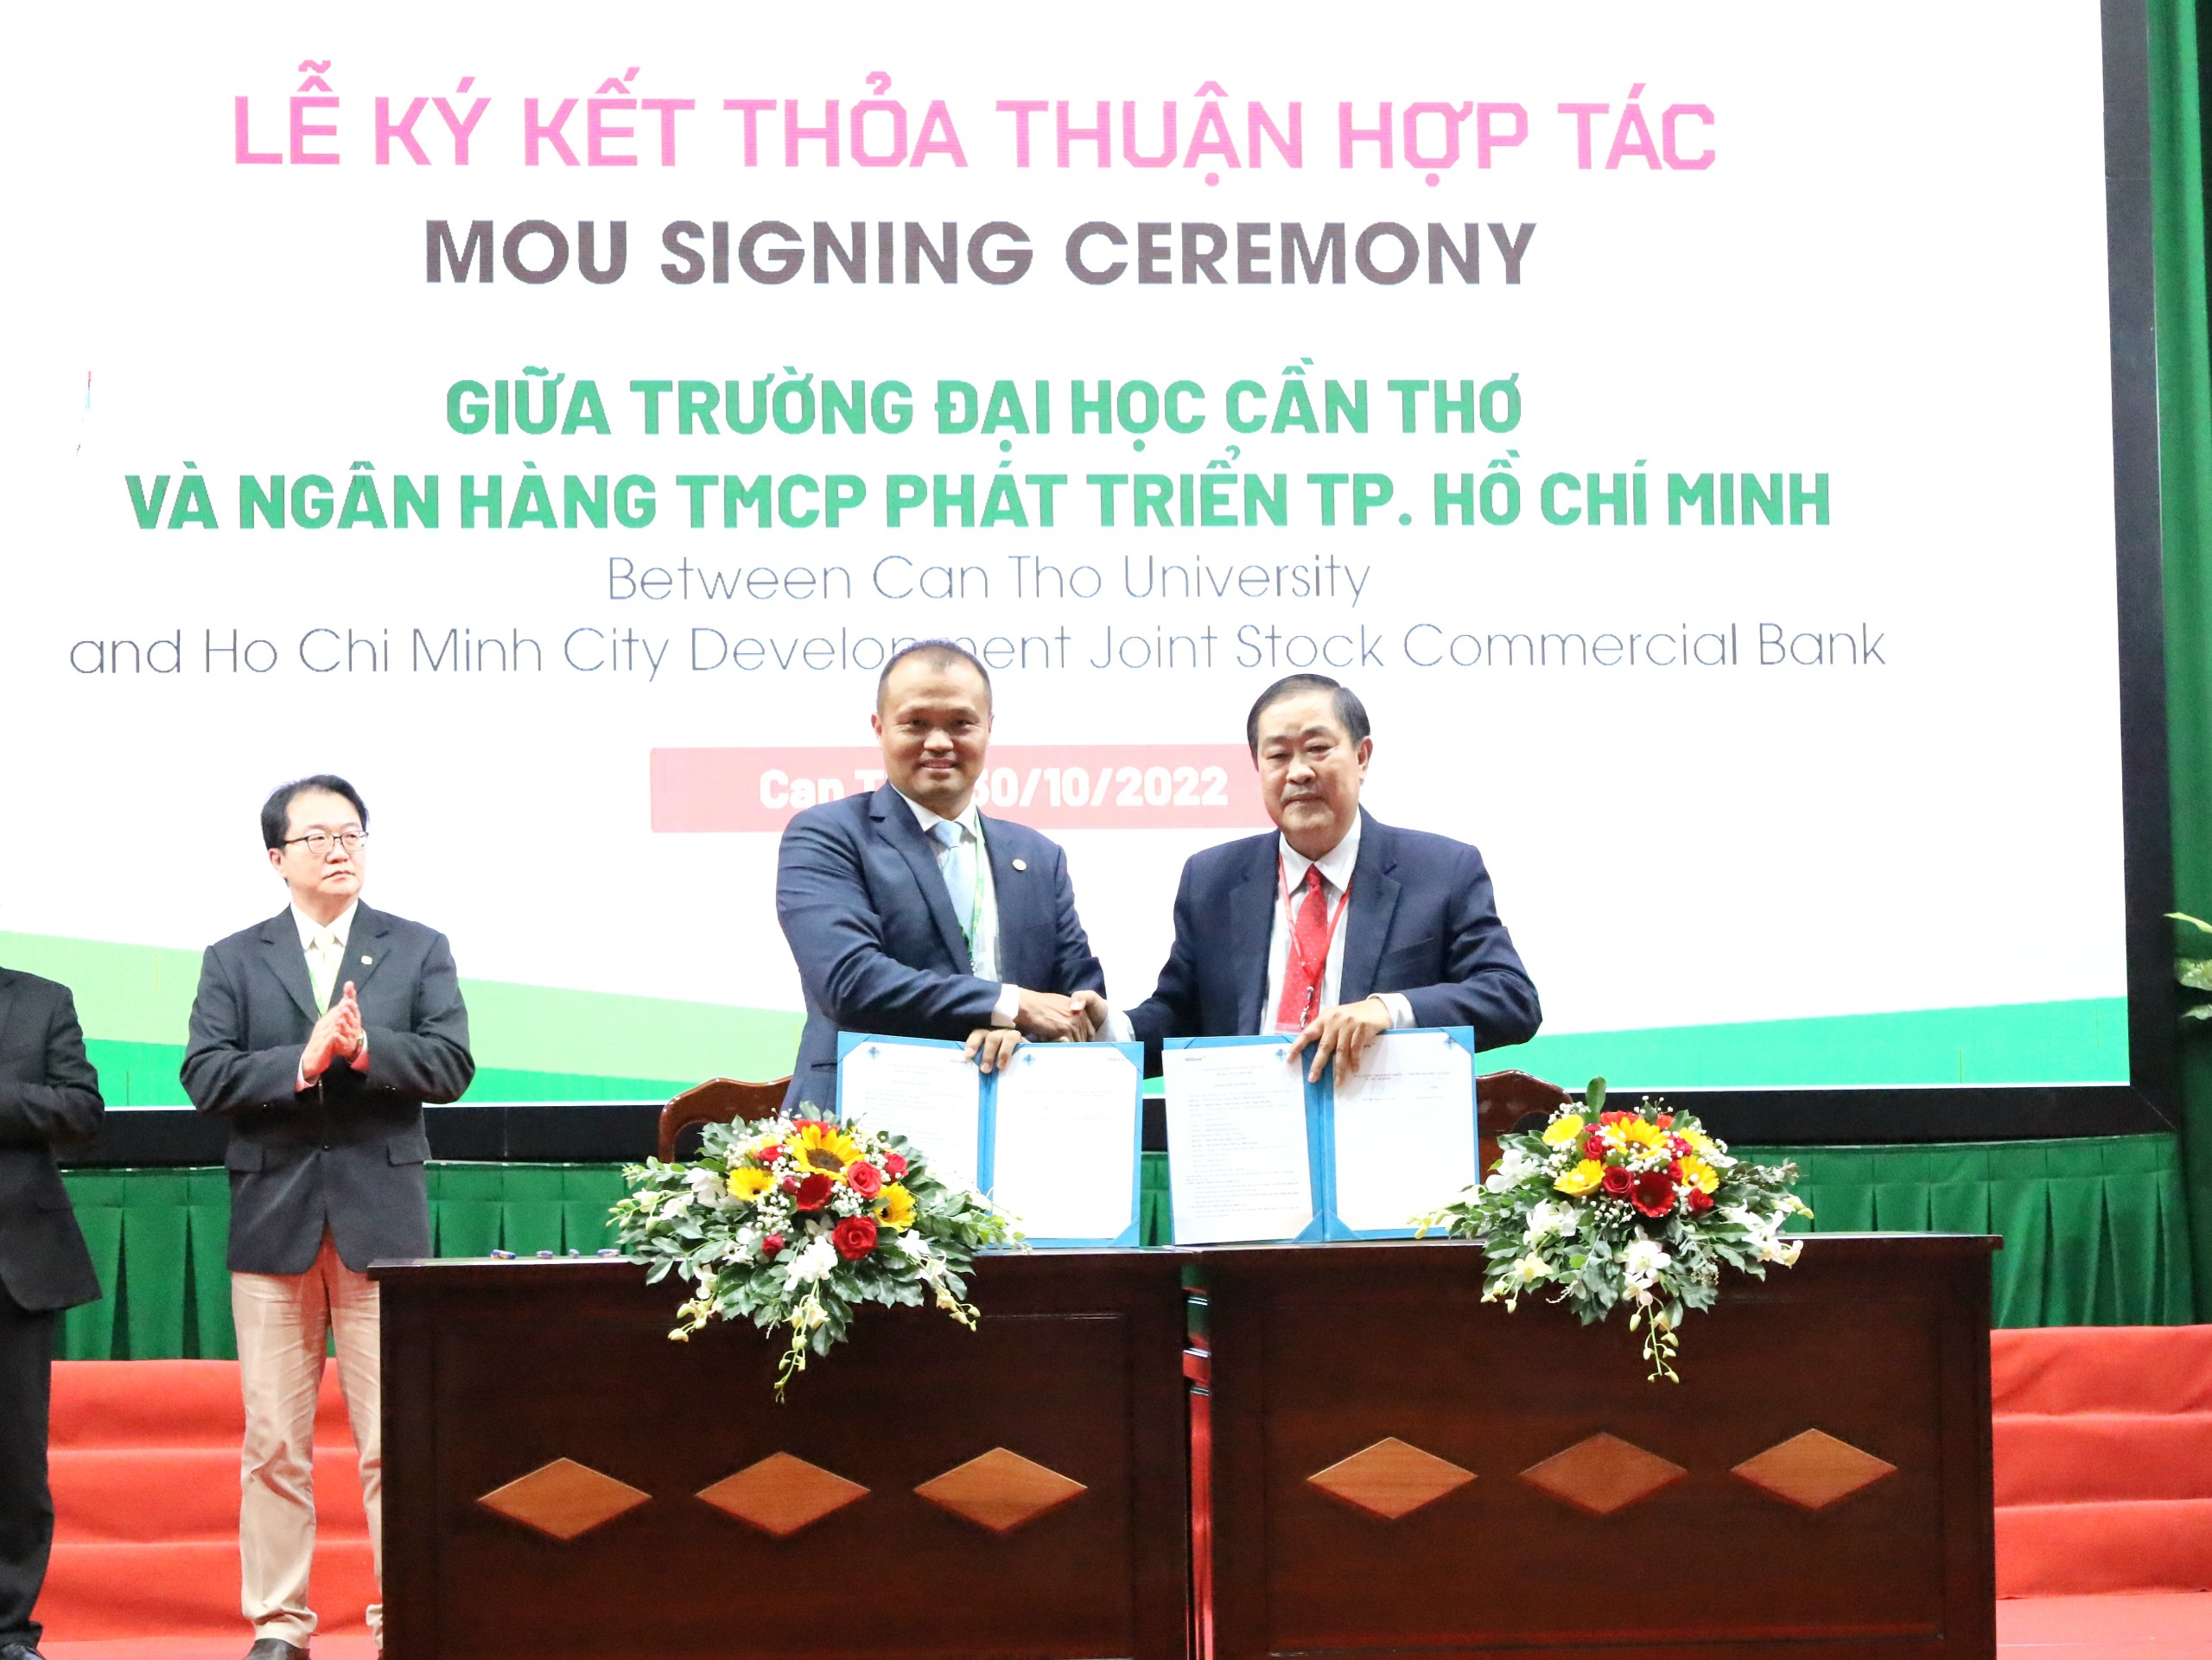 Ký kết thỏa thuận hợp tác giữa Trường Đại học Cần Thơ và Ngân hàng TMCP Phát triển TP. Hồ Chí Minh.